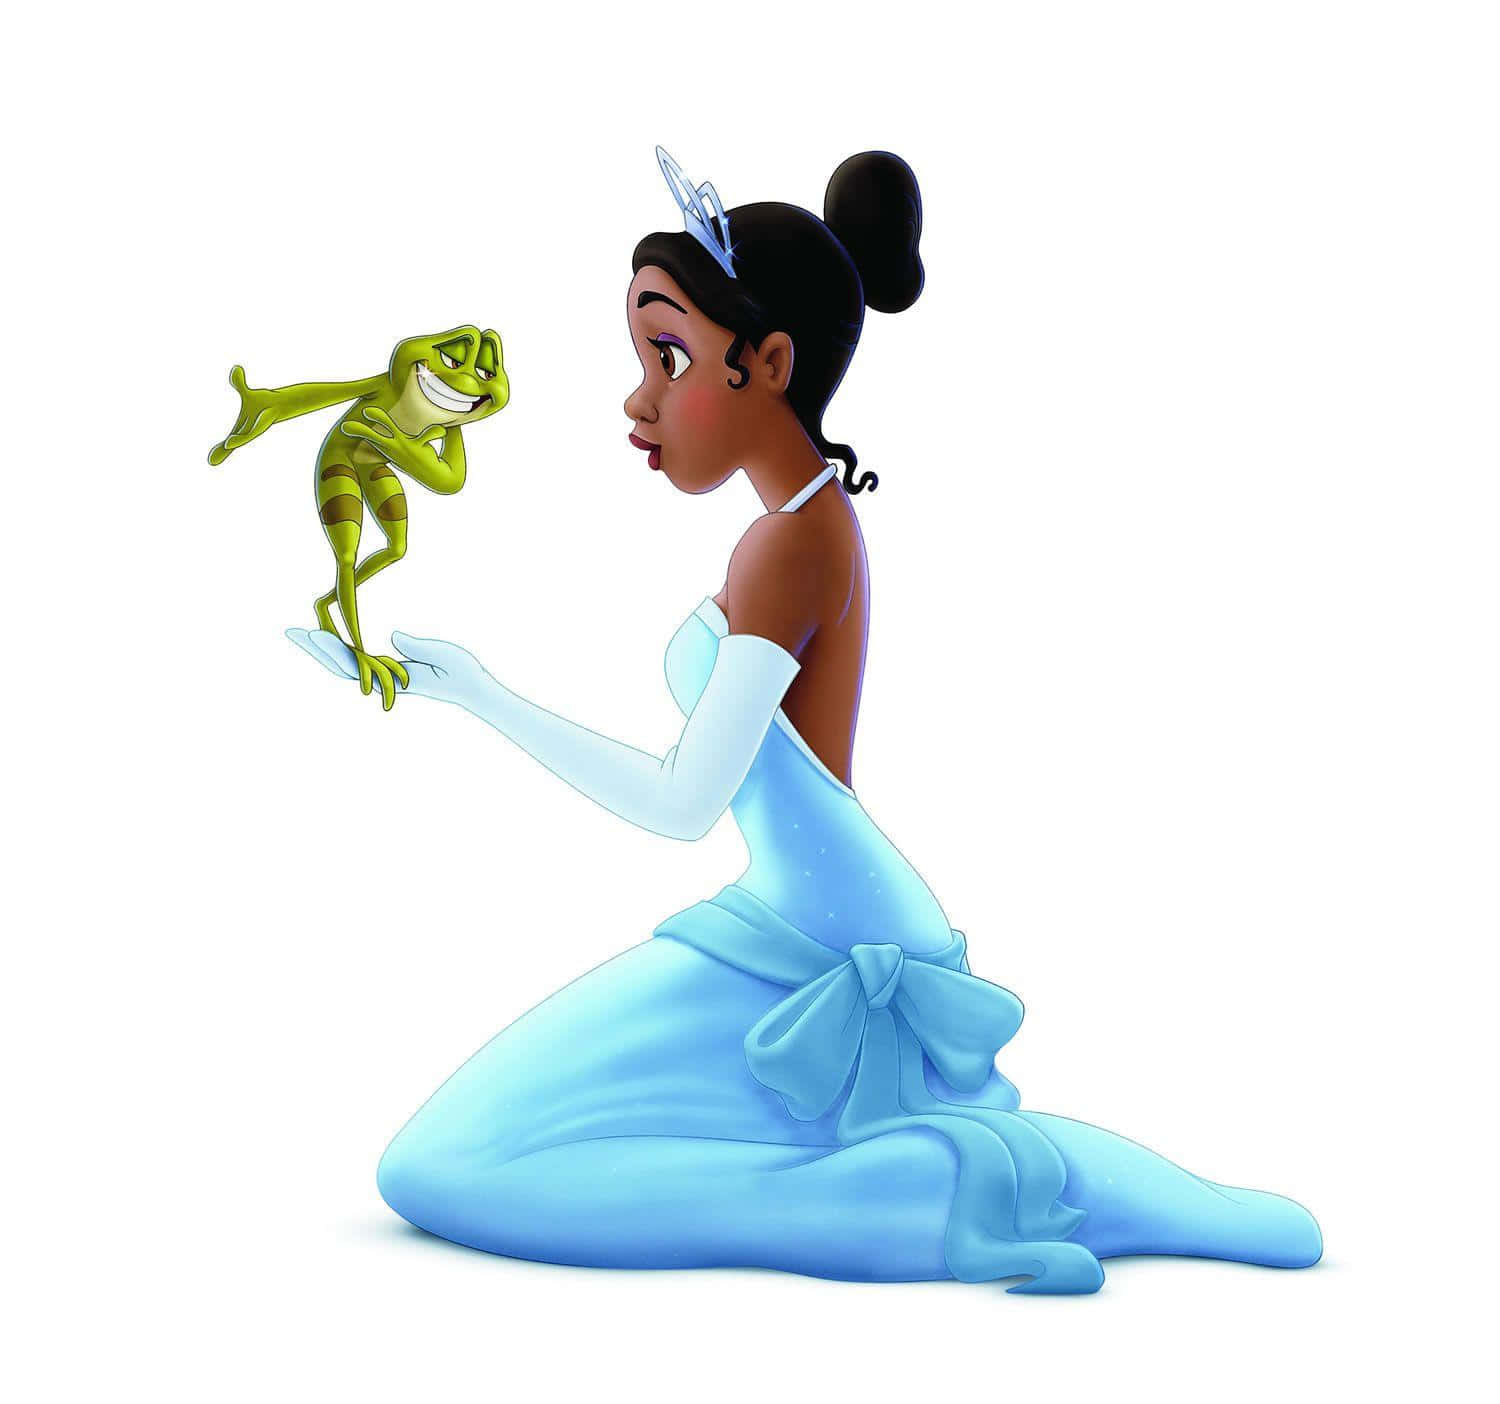 Disney Princess Tiana dancing through her dreams Wallpaper